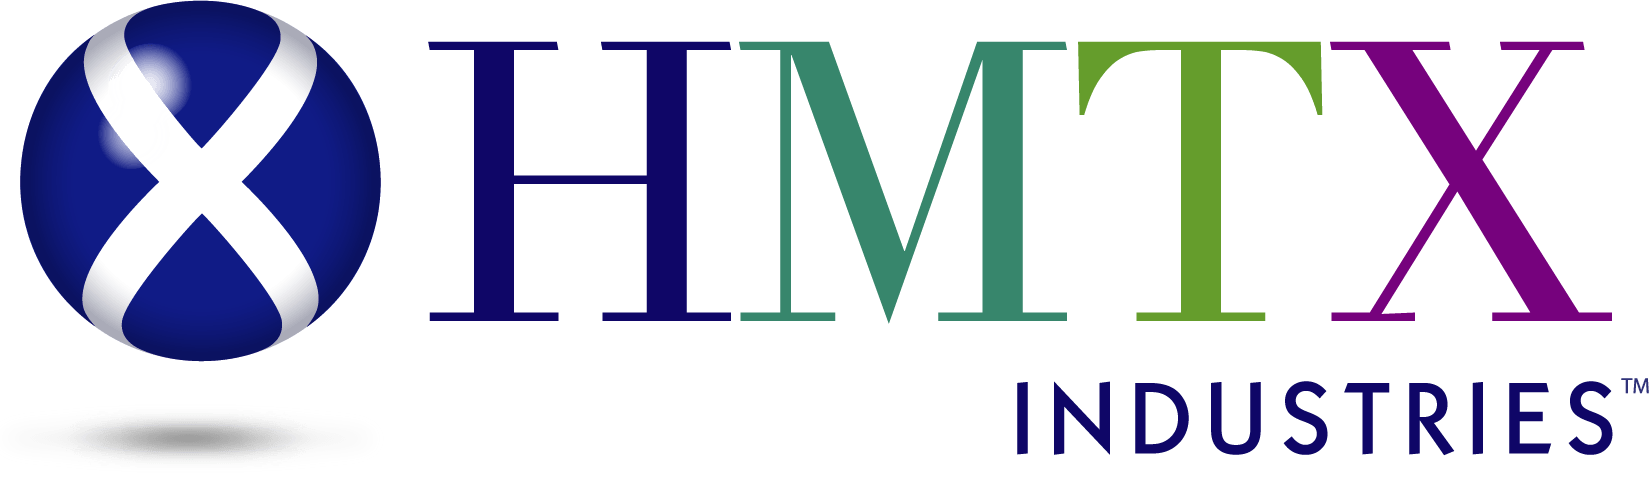 hmtx-industries-logo-t